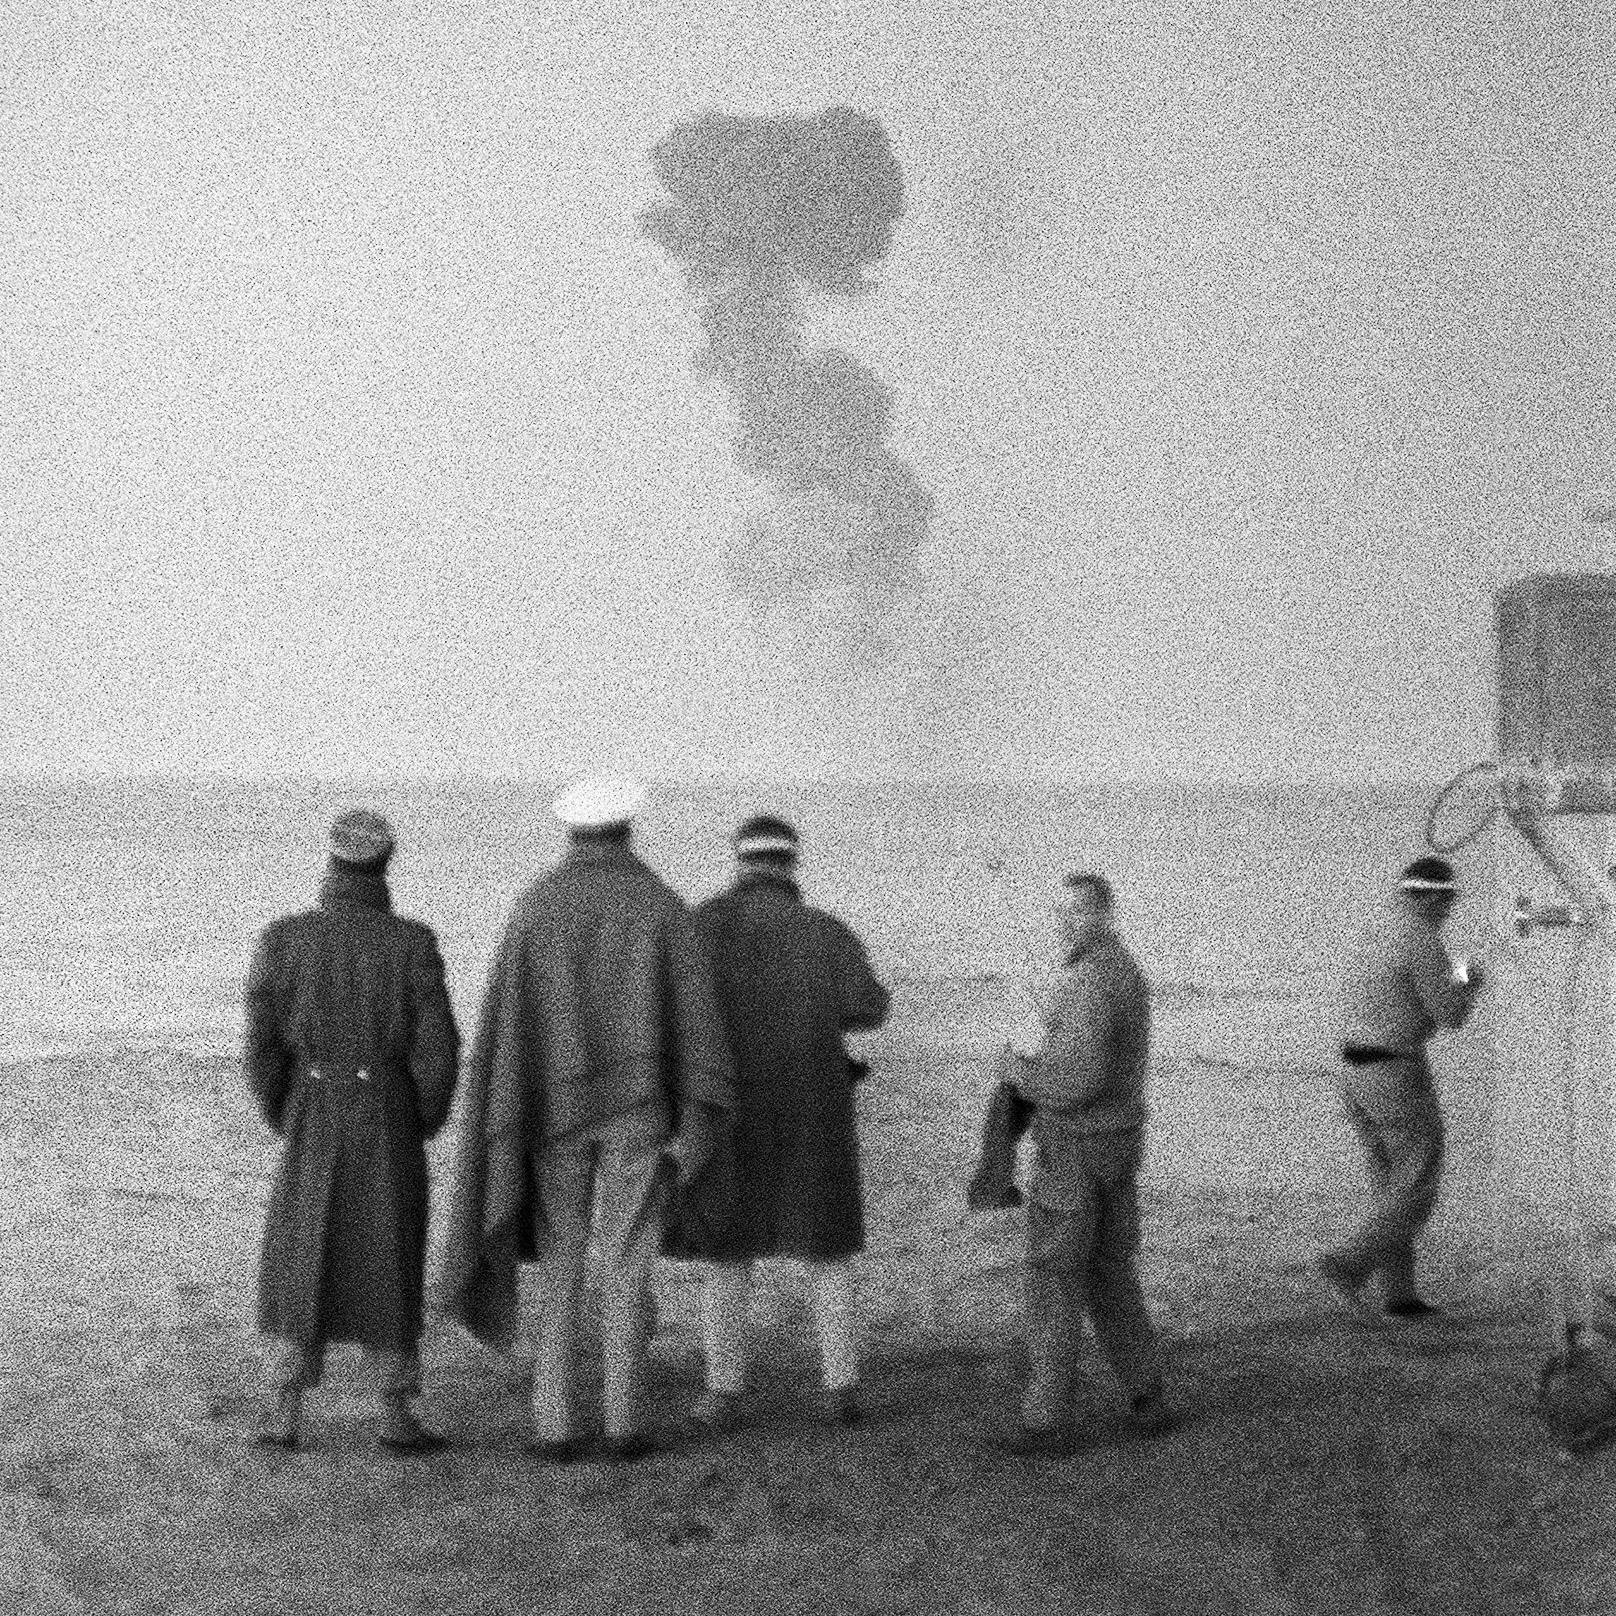 Foto des französischen Atombombentests "Gerboise rouge" am 27. Dezember 1960 in der Wüste von Algerien